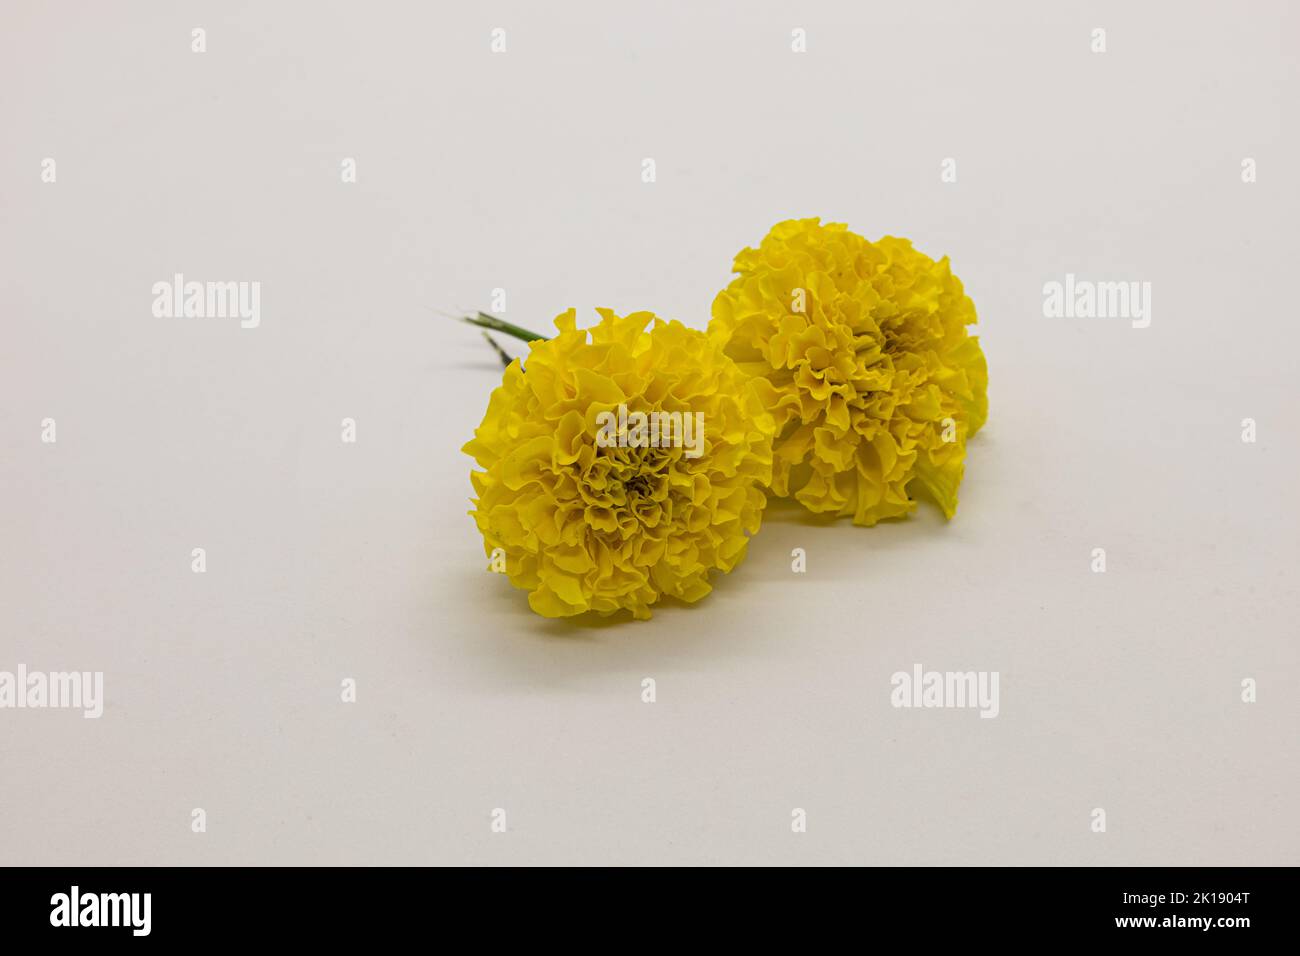 Yellow marigolds isolated on white background. Stock Photo